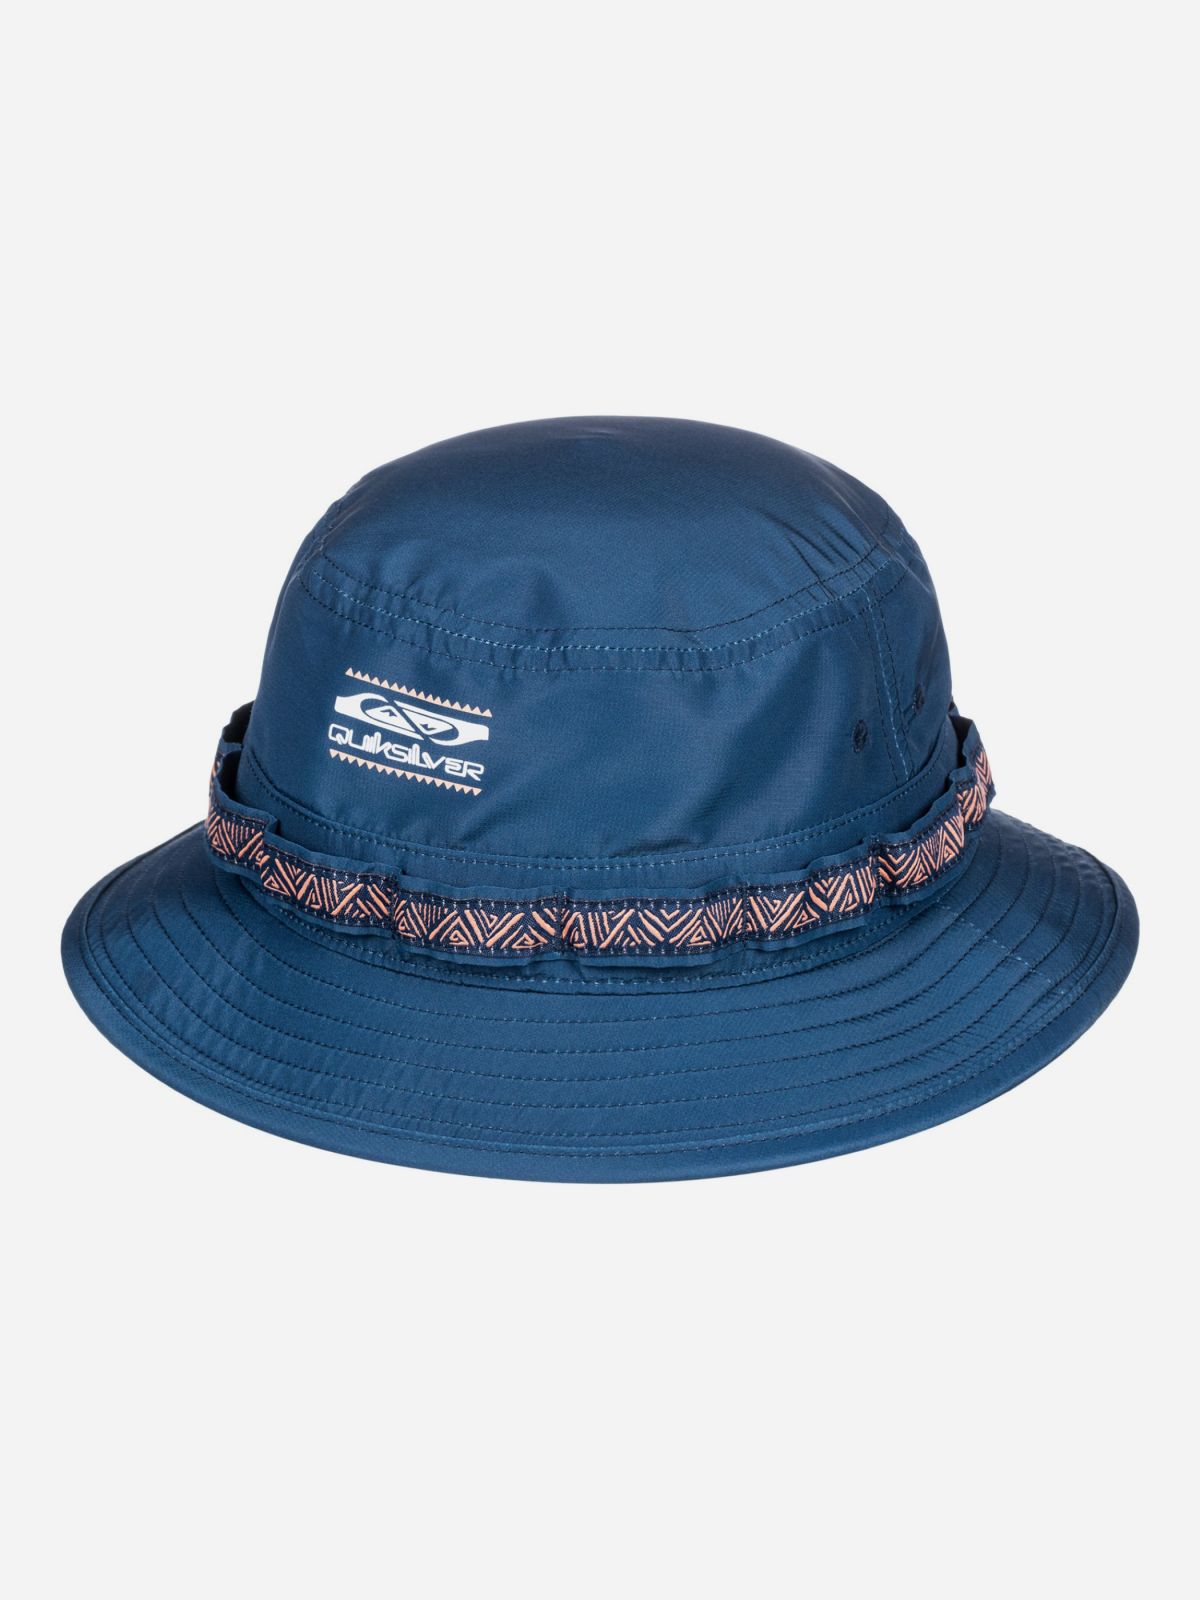  כובע באקט עם לוגו של QUIKSILVER